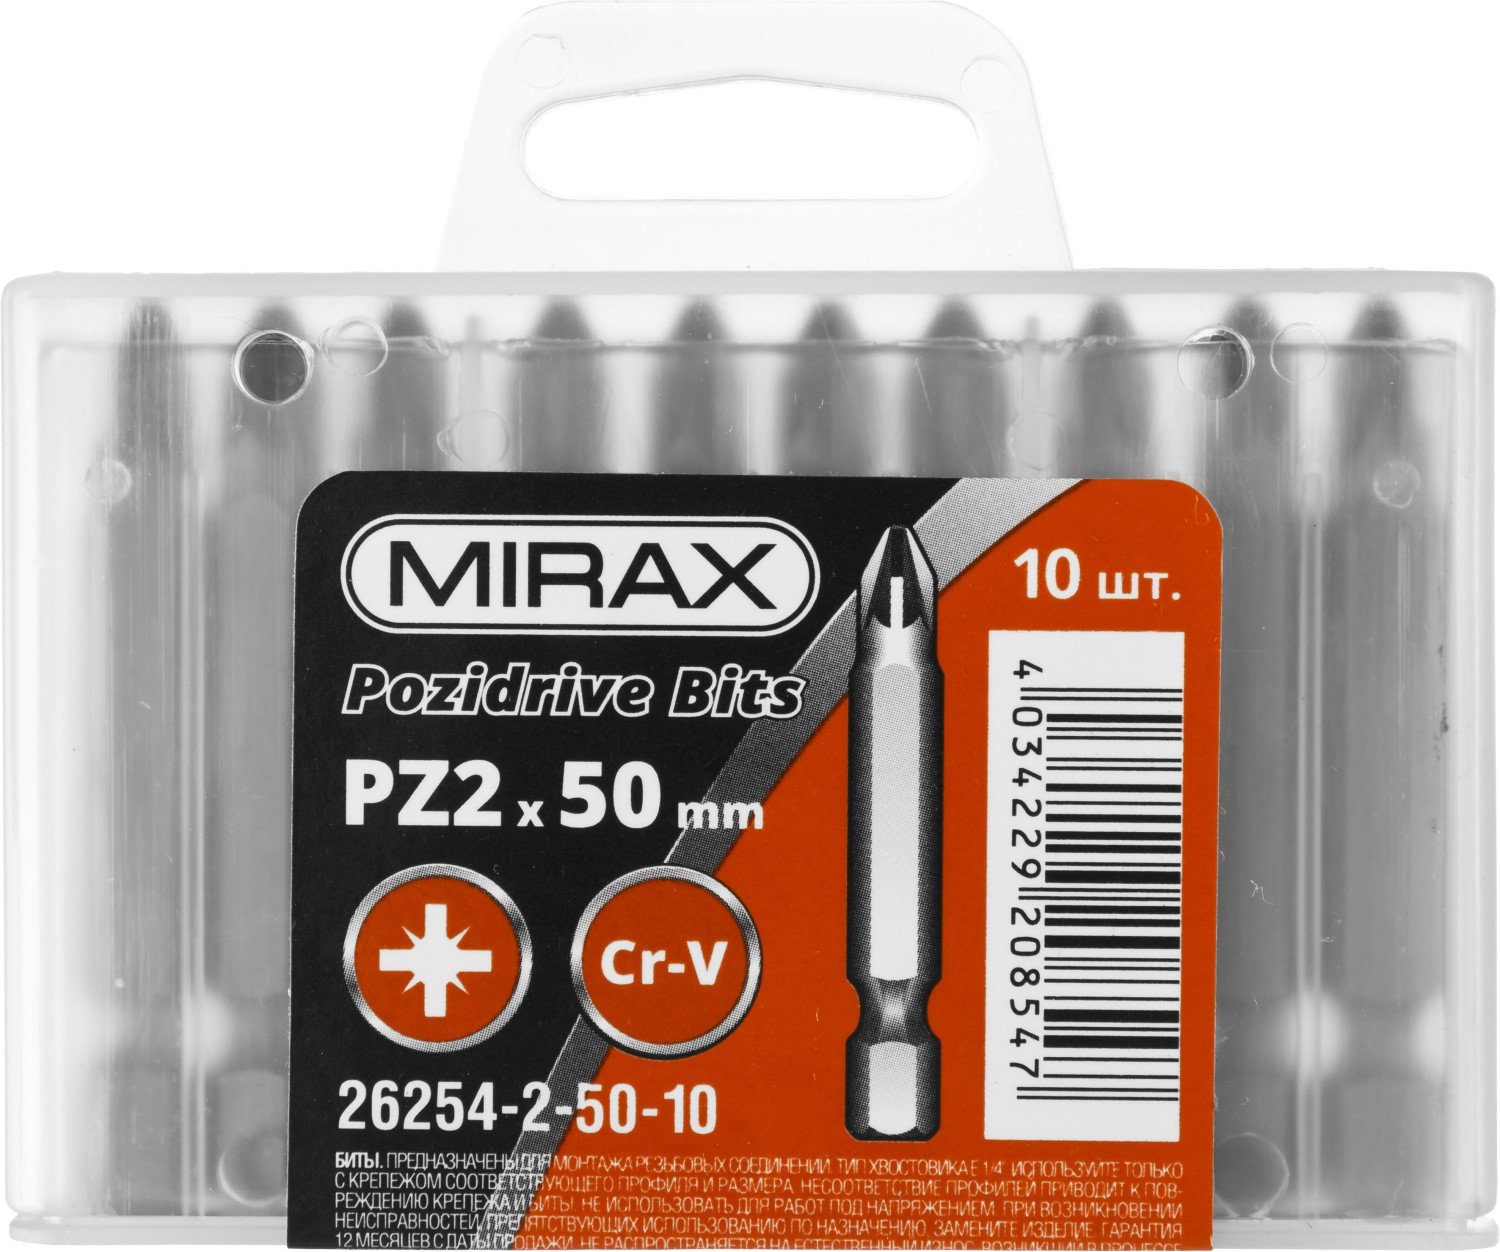   MIRAX PZ2 50  10 . (26254-2-50-10)